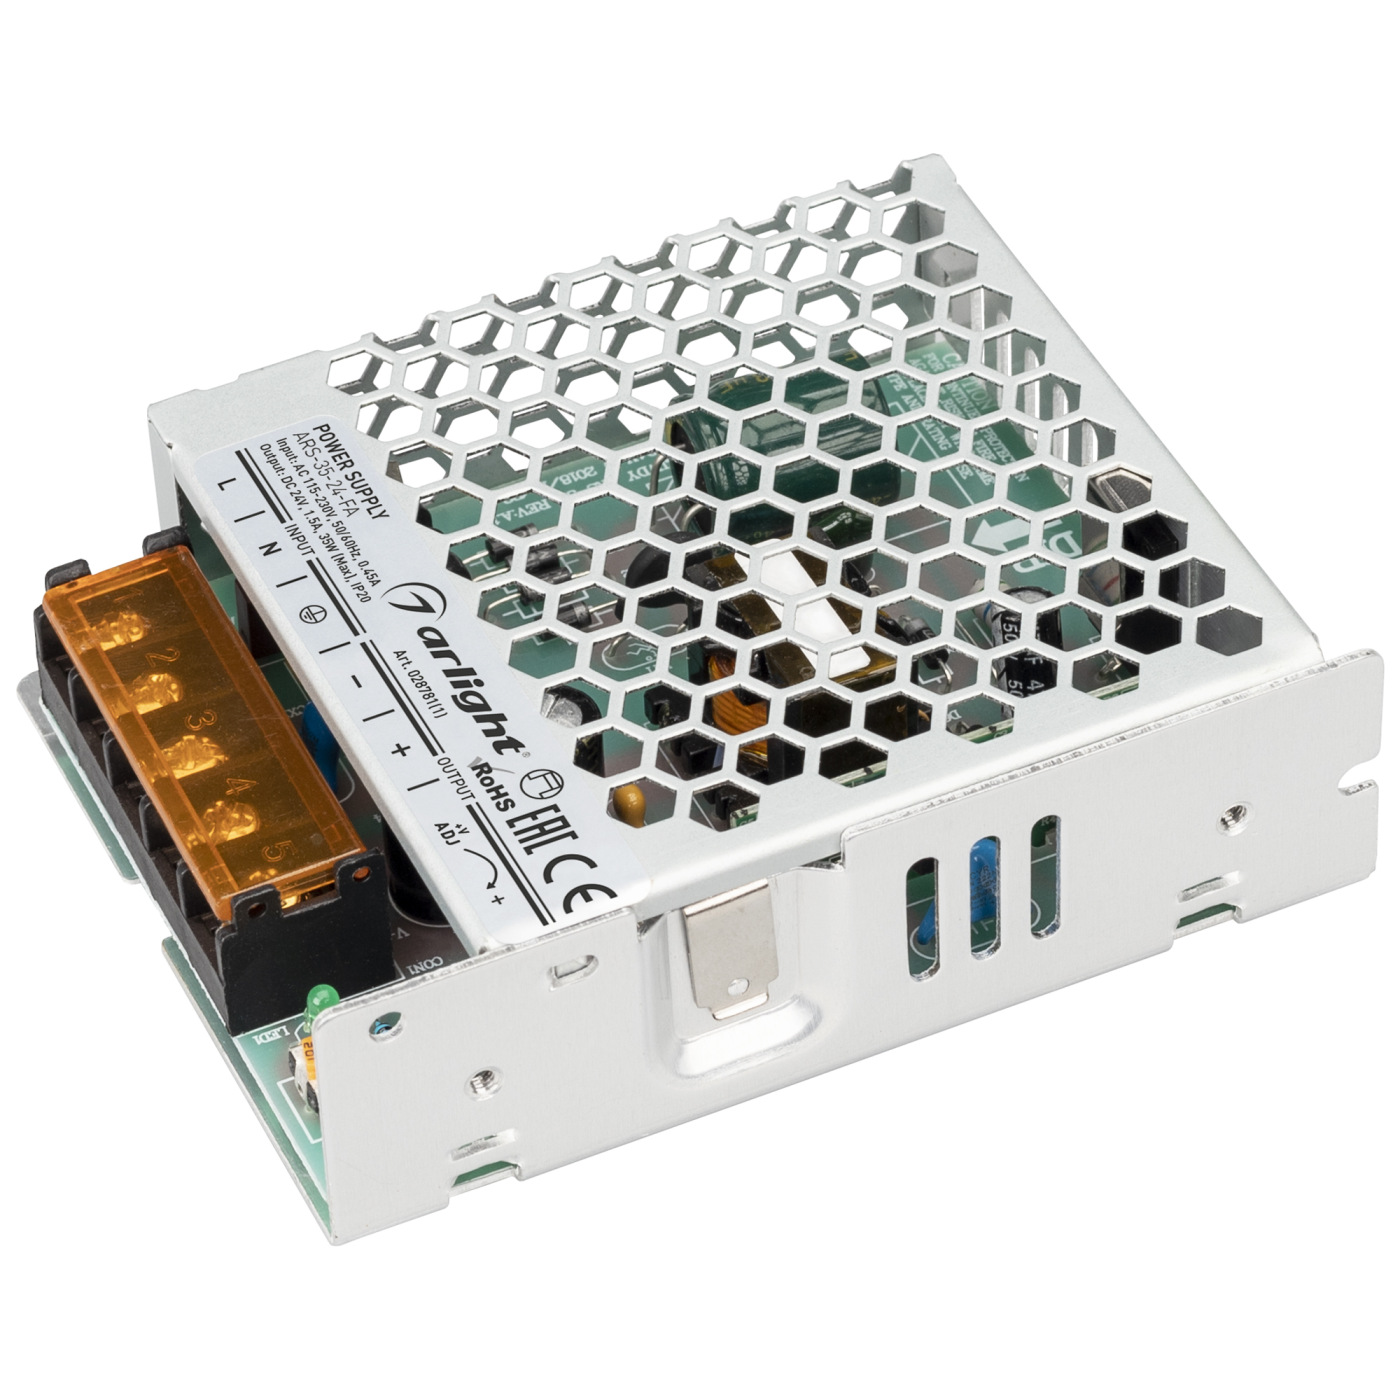 Блок питания ARS-35-24-FA (24V, 1.5A, 35W) (Arlight, IP20 Сетка, 3 года), 028781(1) сетка и режущий блок для электробритвы braun cooltec 40b